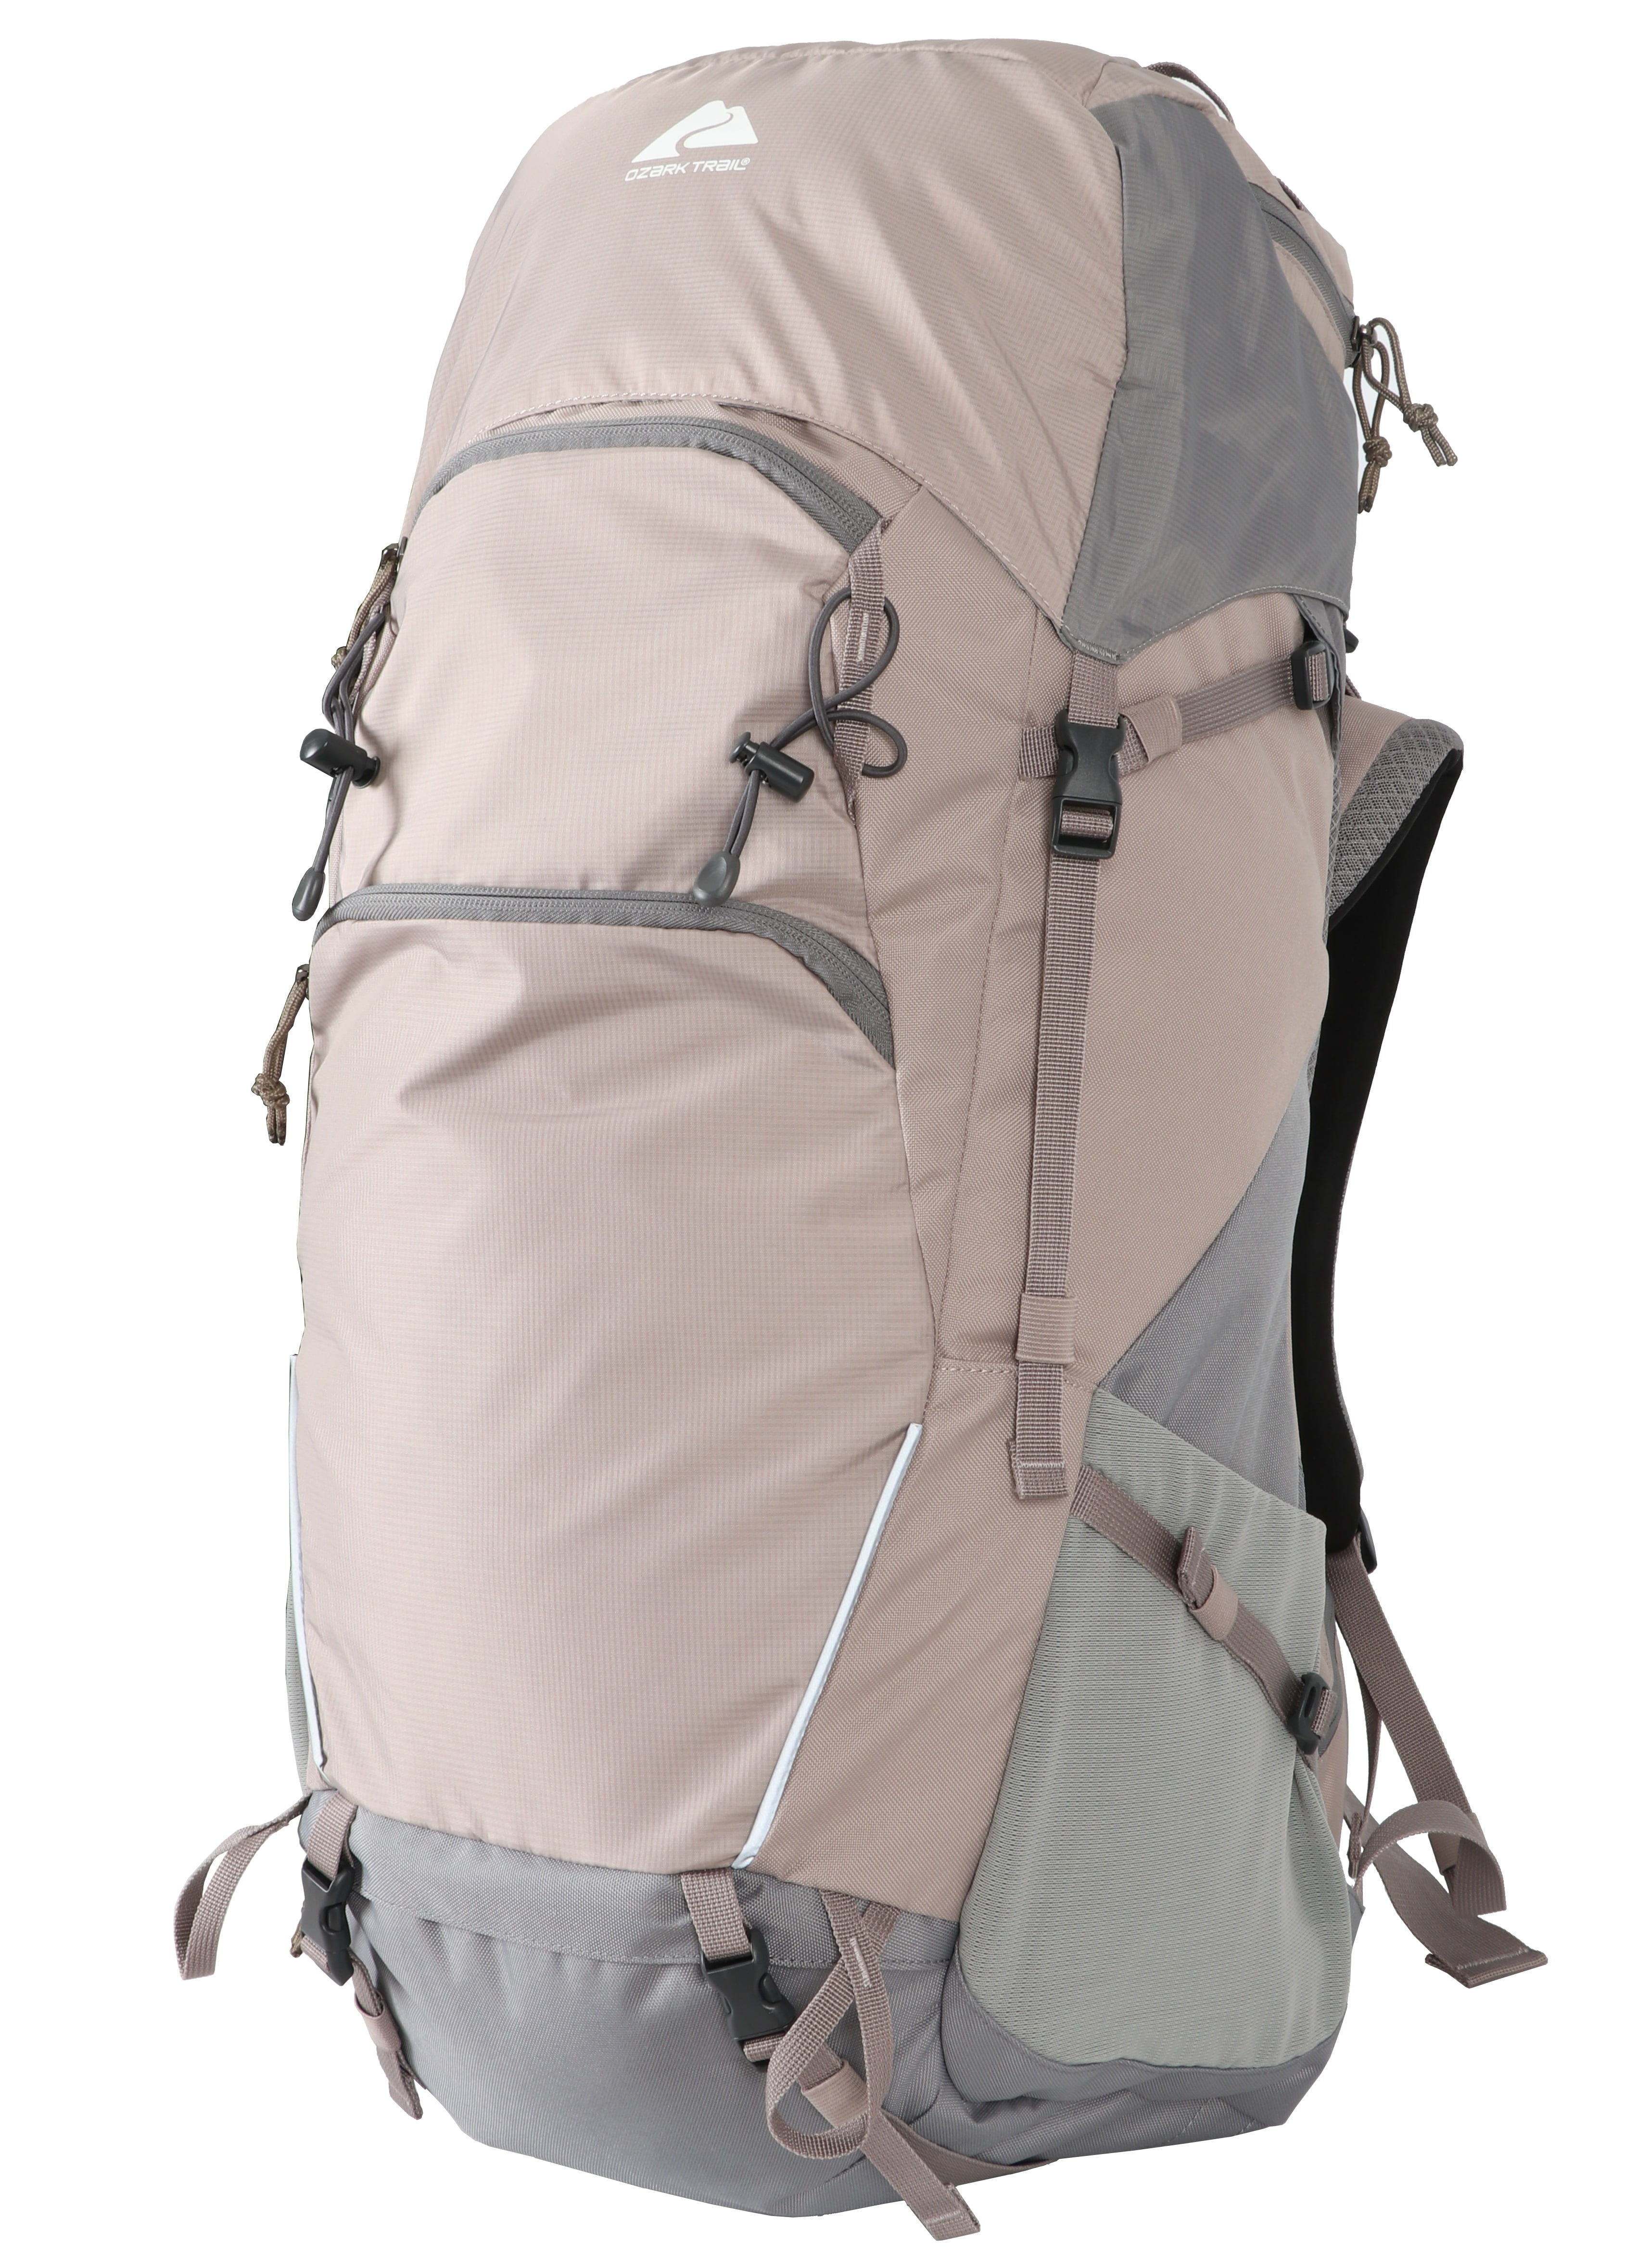 Ozark Trail 50 Liter Backpack, with Adjustable Compression Straps, Tan 